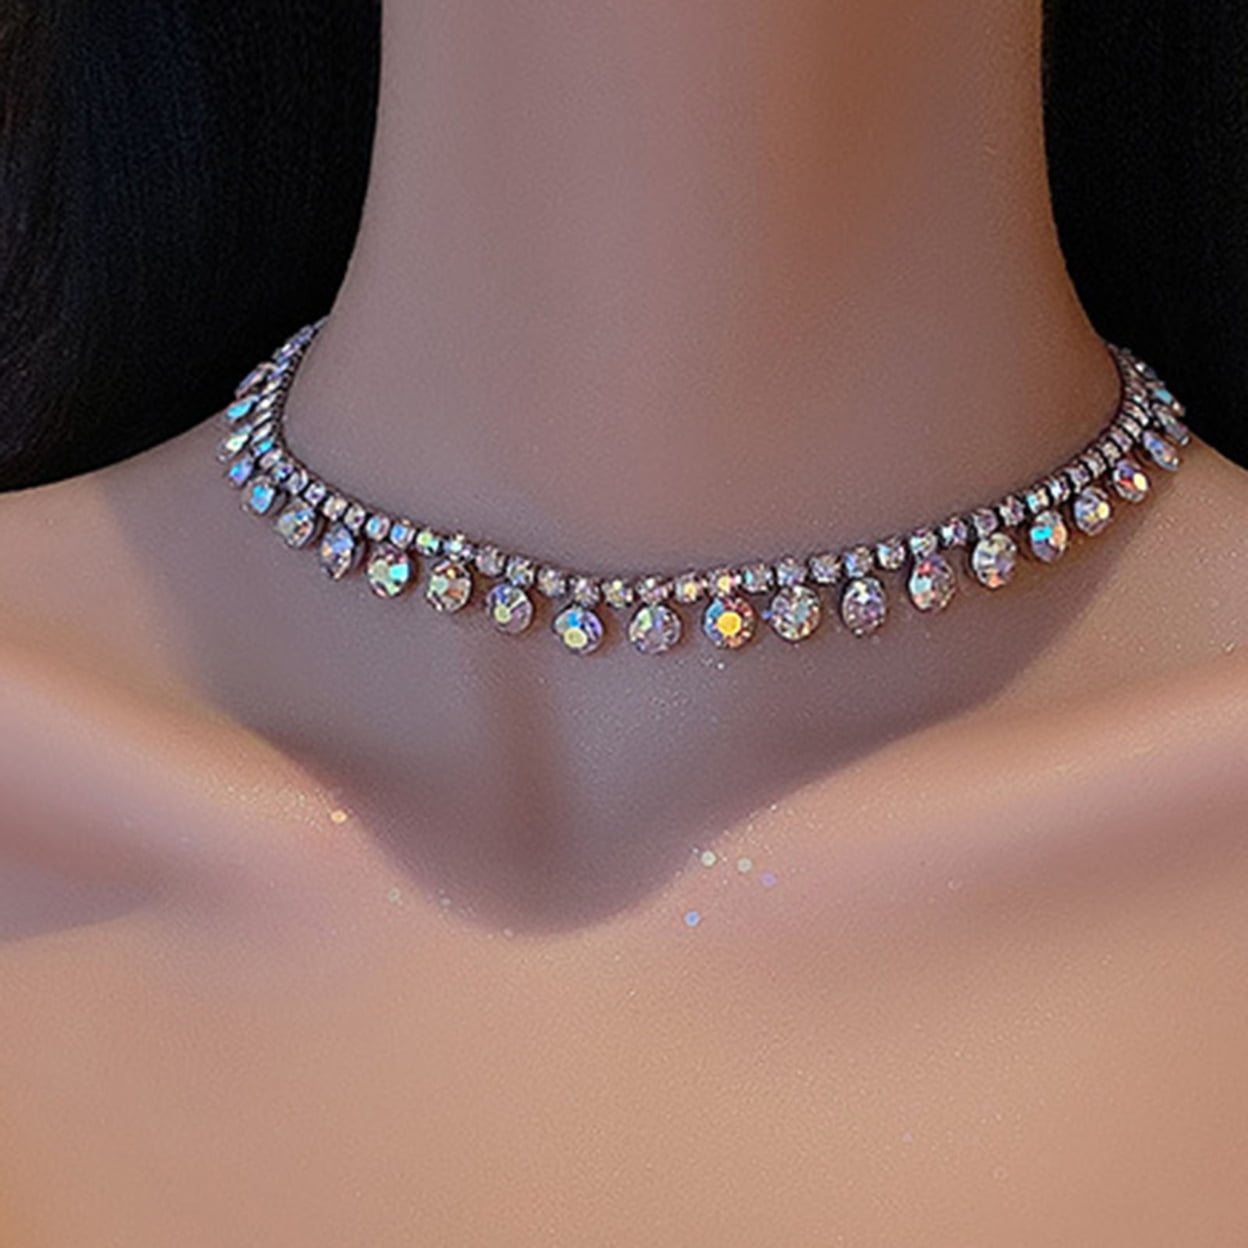 Women Jewelry Pendant Choker Necklace Women Teen Girls Elegant Rhinestone  Tassels Clavicle Chain Necklace Collar Jewelry Gifts Women Jewelry Set